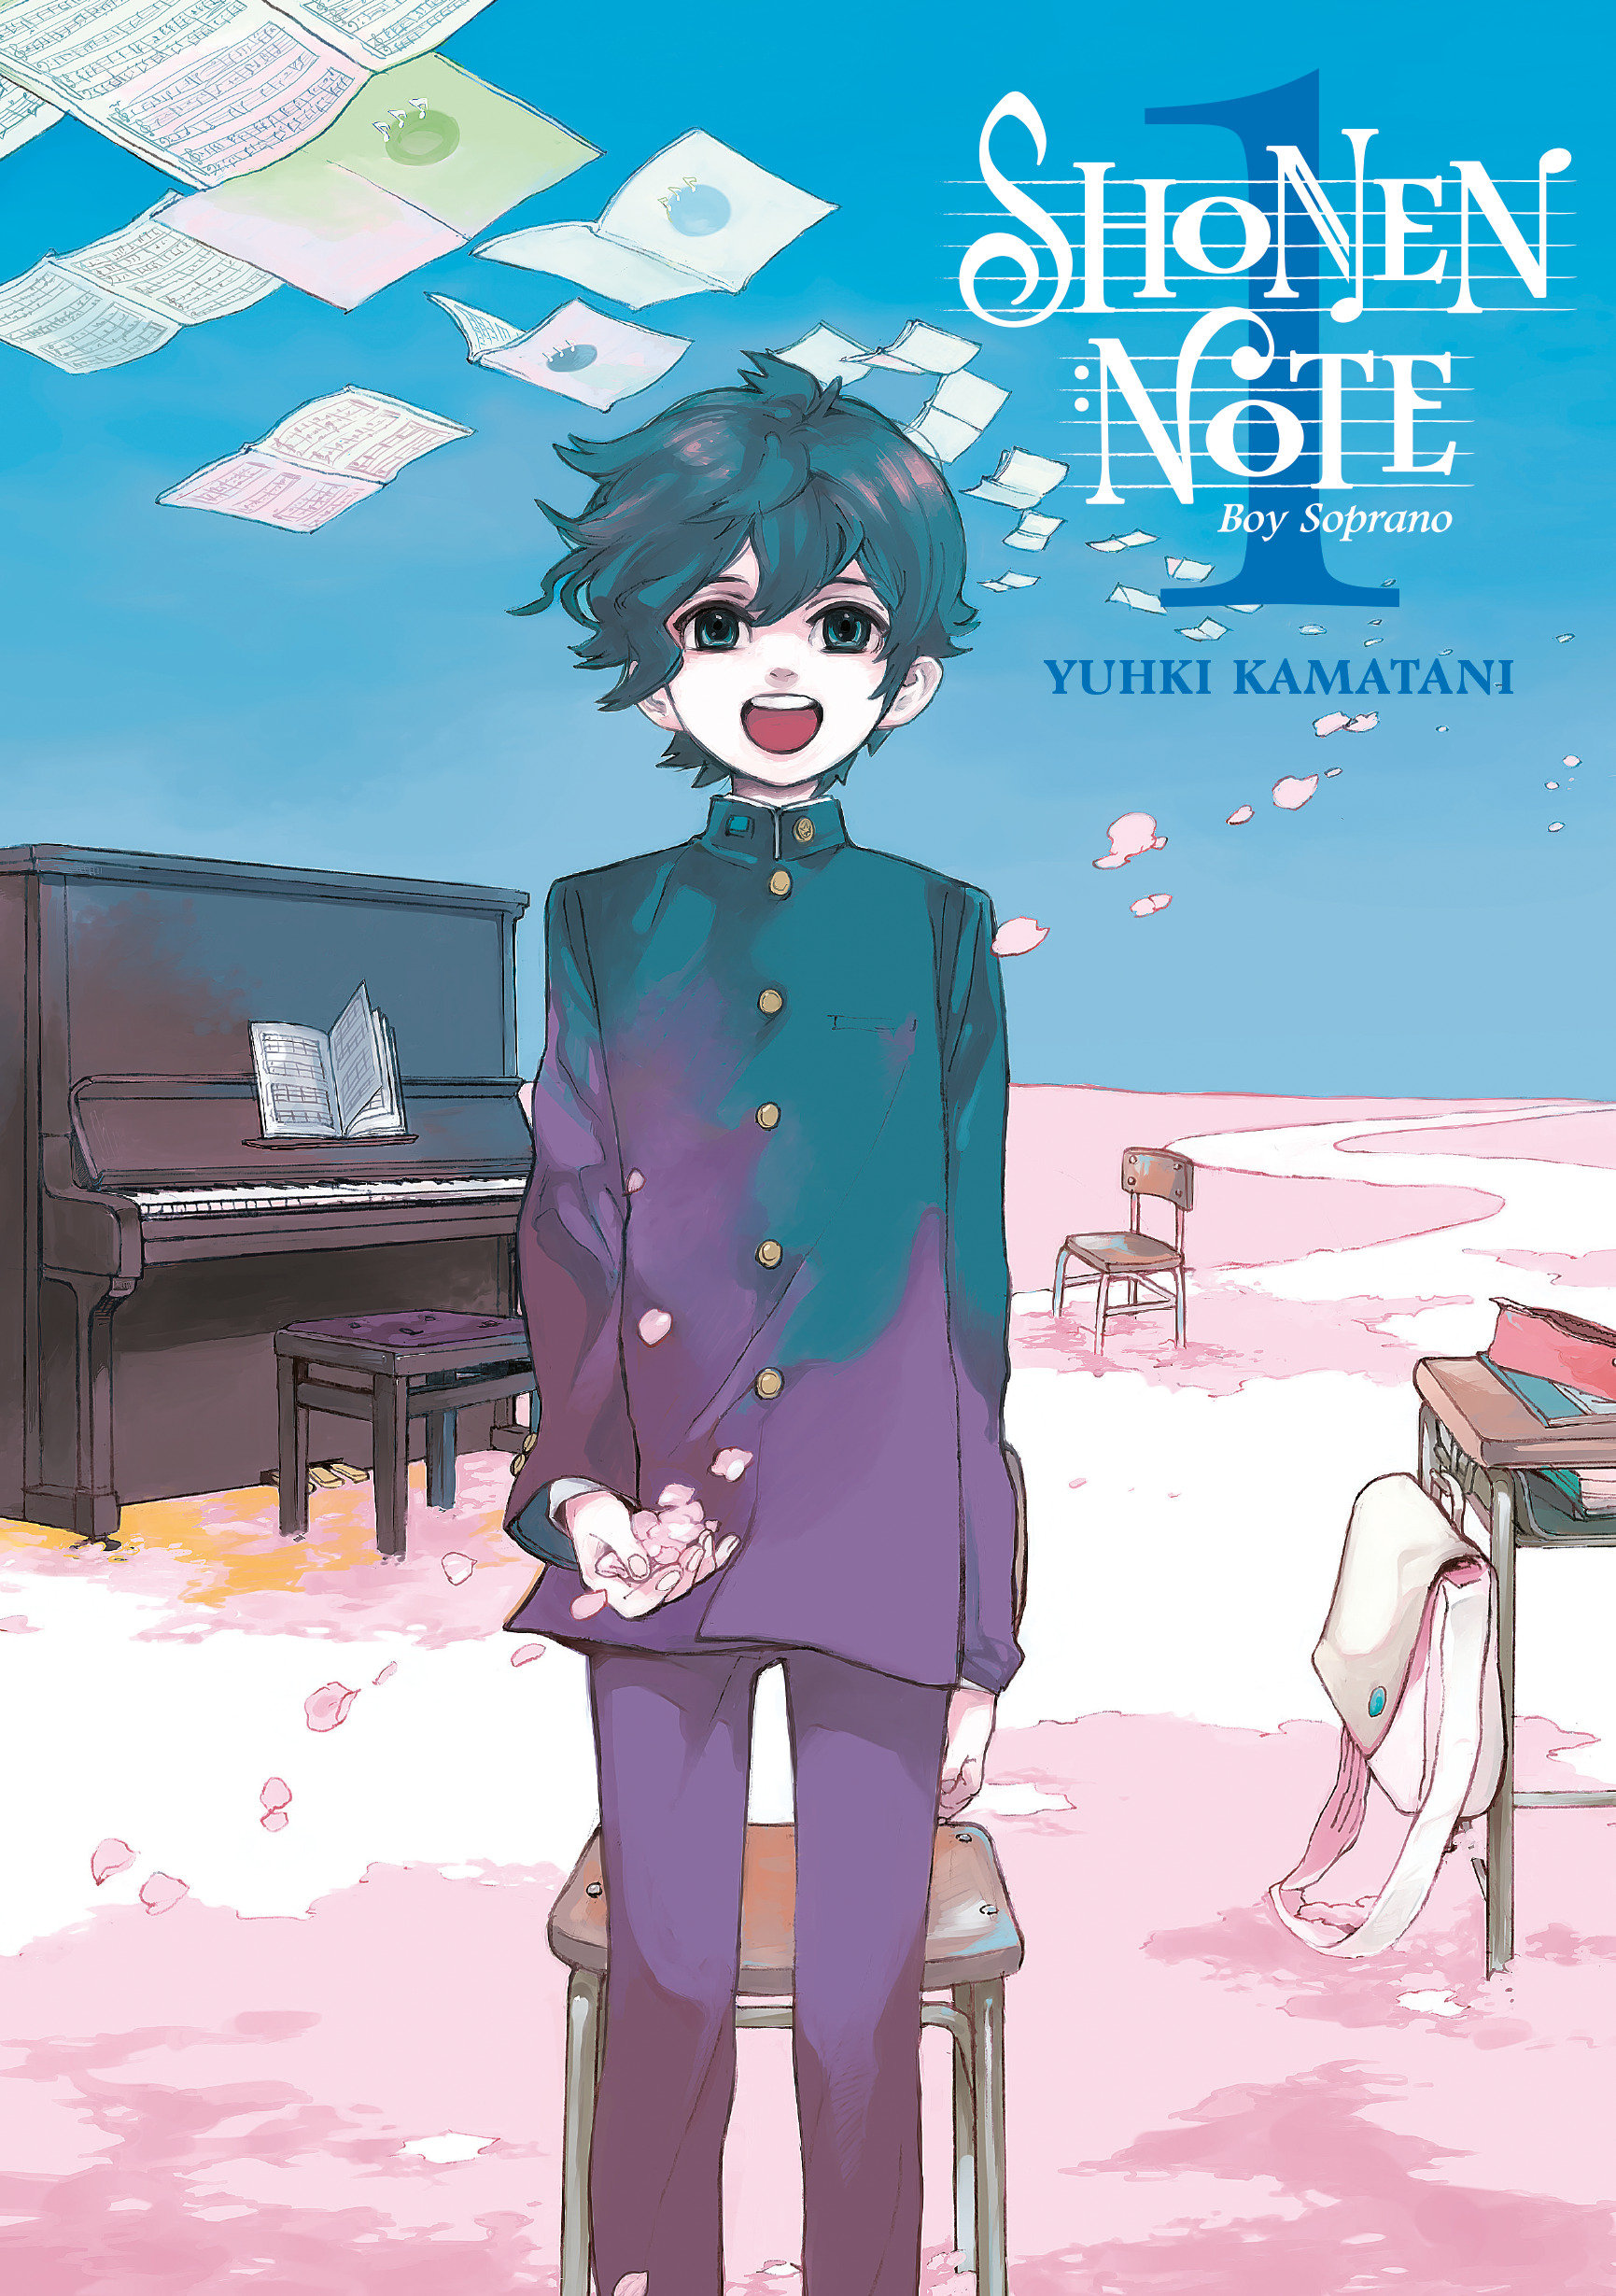 Shonen Note Boy Soprano Manga Volume 1